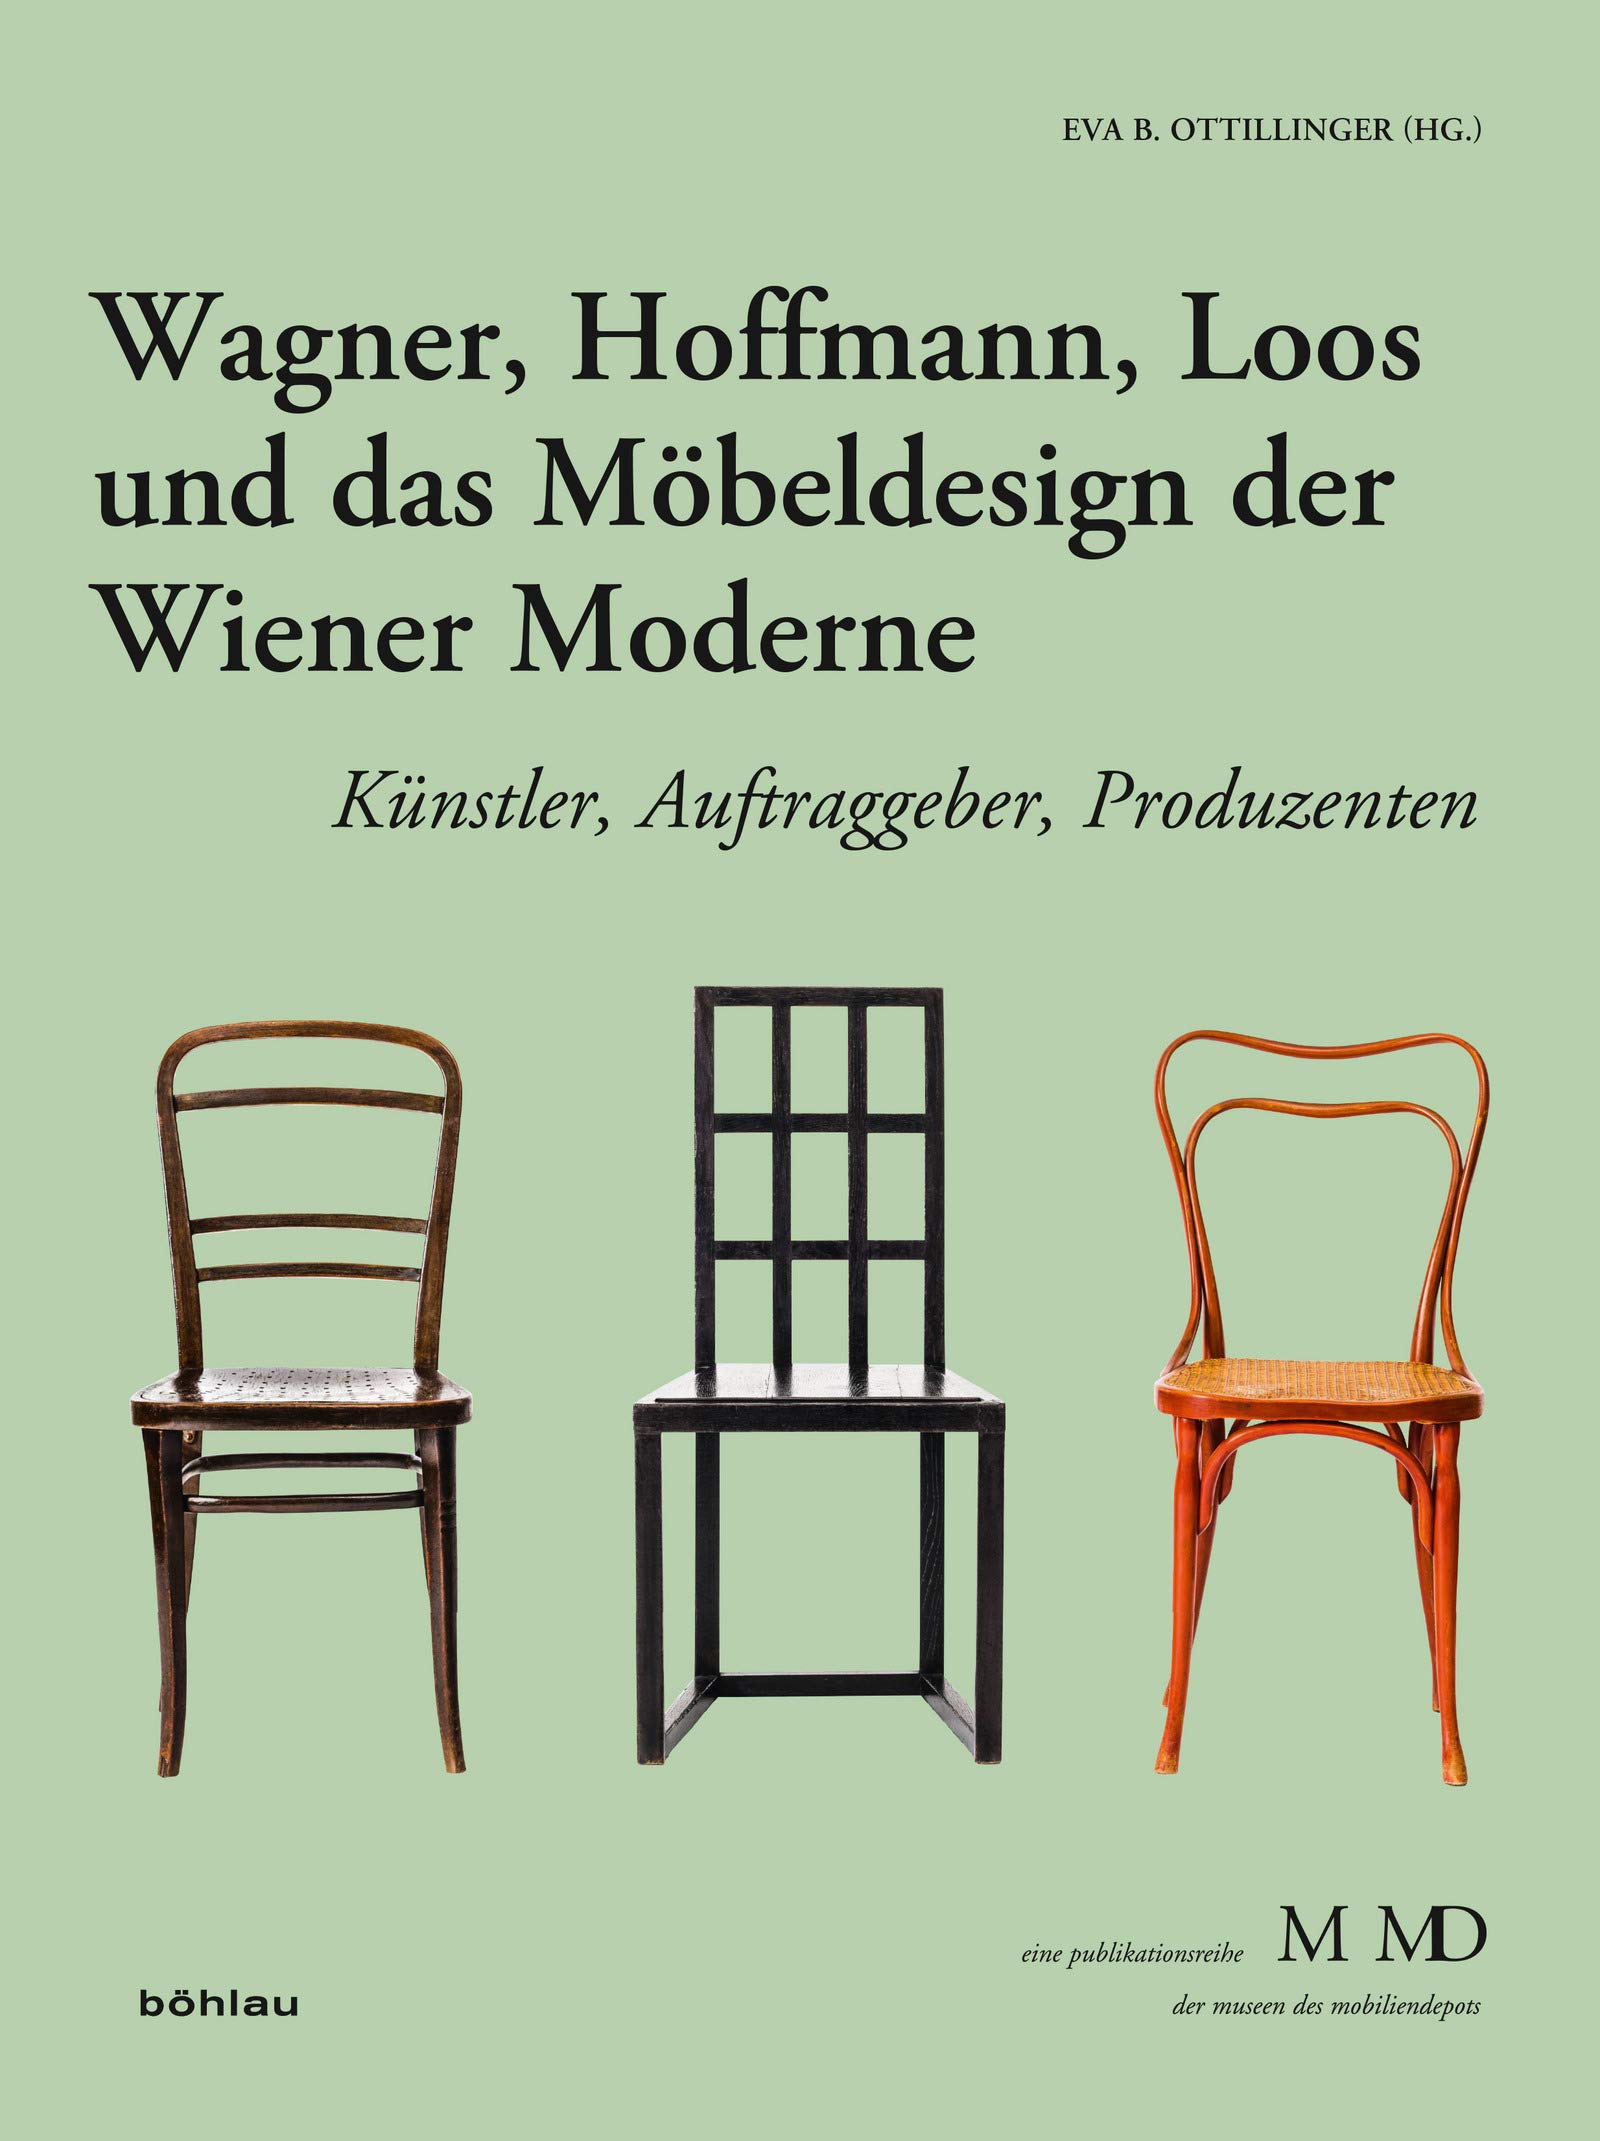 Wagner, Hoffmann, Loos und das Möbeldesign der Wiener Moderne: Künstler, Auftraggeber, Produzenten (Eine Publikationsreihe M MD der Museen des Mobiliendepots 33) (German Edition)